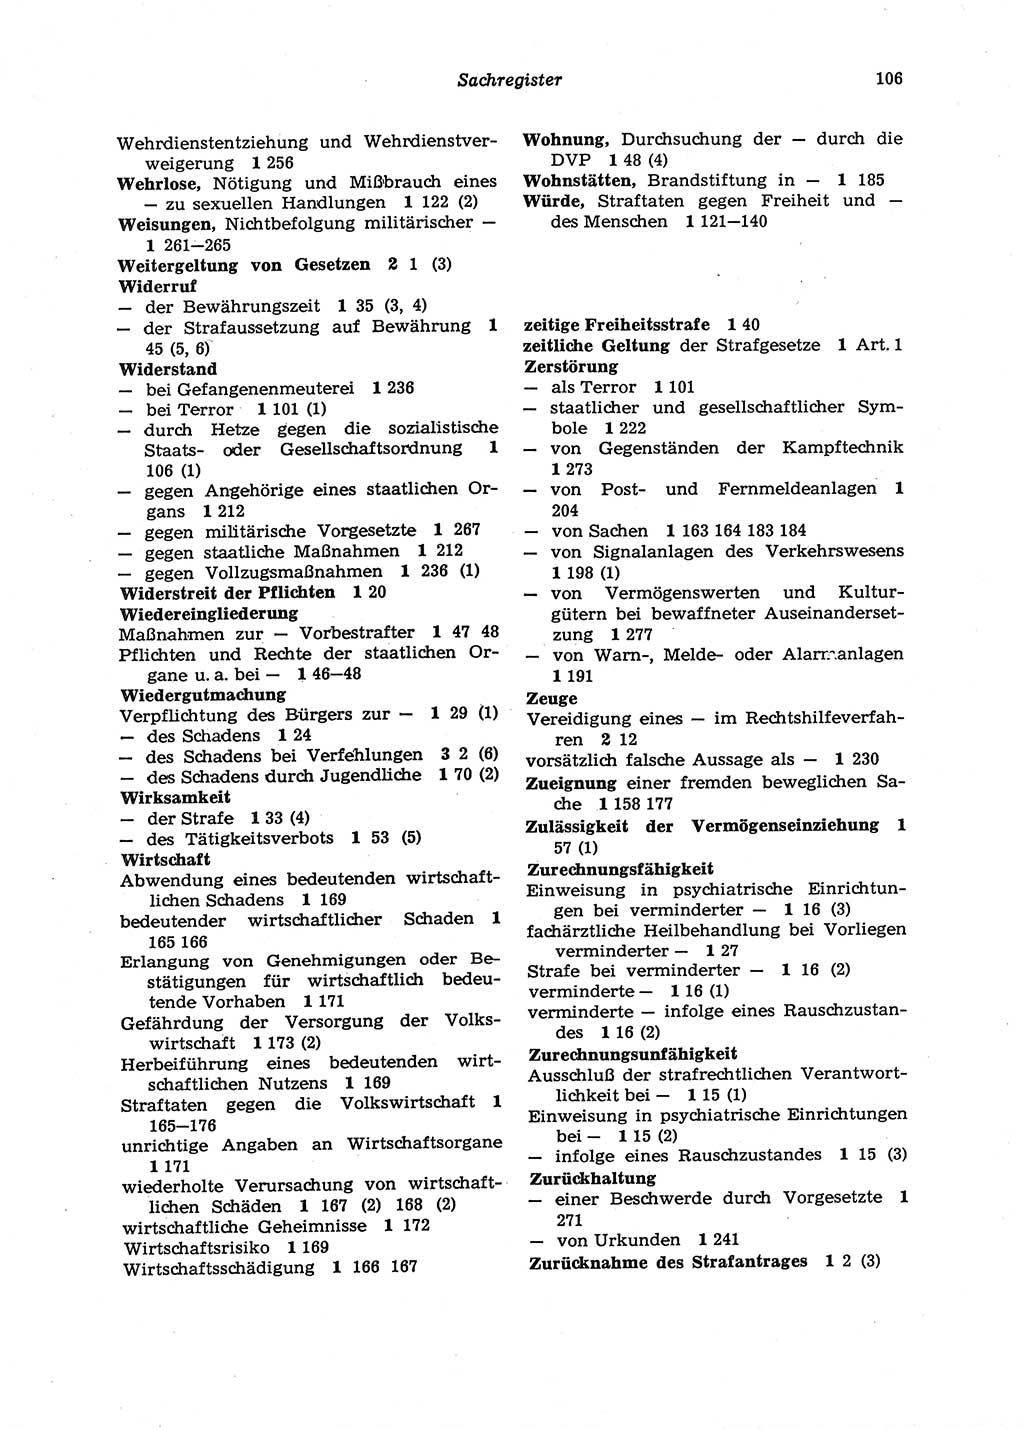 Strafgesetzbuch (StGB) der Deutschen Demokratischen Republik (DDR) 1987, Seite 106 (StGB DDR 1987, S. 106)